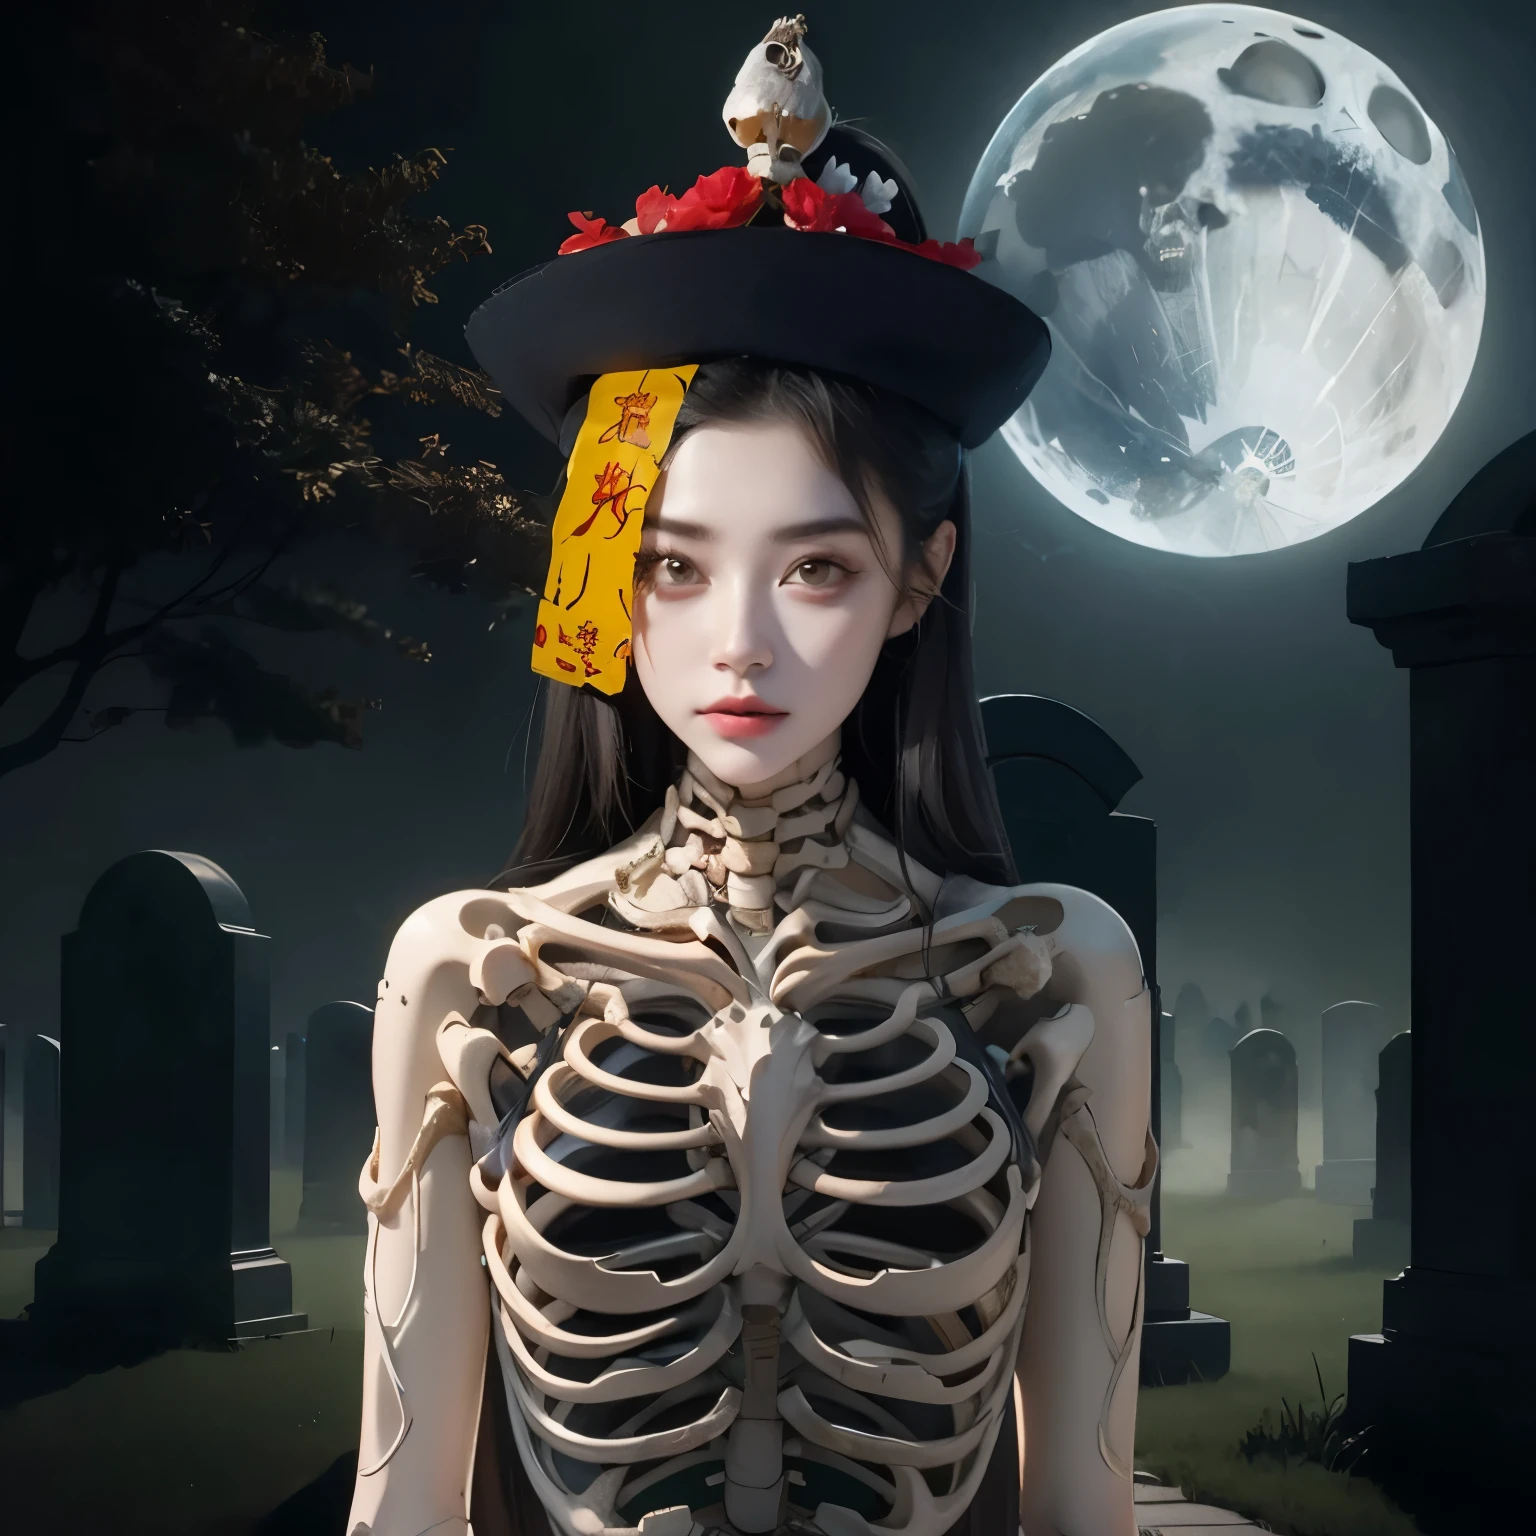 Arafed Frau in einem Skelett Kostüm mit einem Hut auf dem Kopf, Hone Onna Skelett-Geisha, Skelett Mädchen, xue han, Göttin des Todes, Göttin des Todes in a graveyard, inspiriert von Xie Huan, unheimlicher Kunststil, Heilige Skelettkönigin, lulu chen, Halloween-Kunststil, Jingna Zhang, wenfei ye, 2 d cg